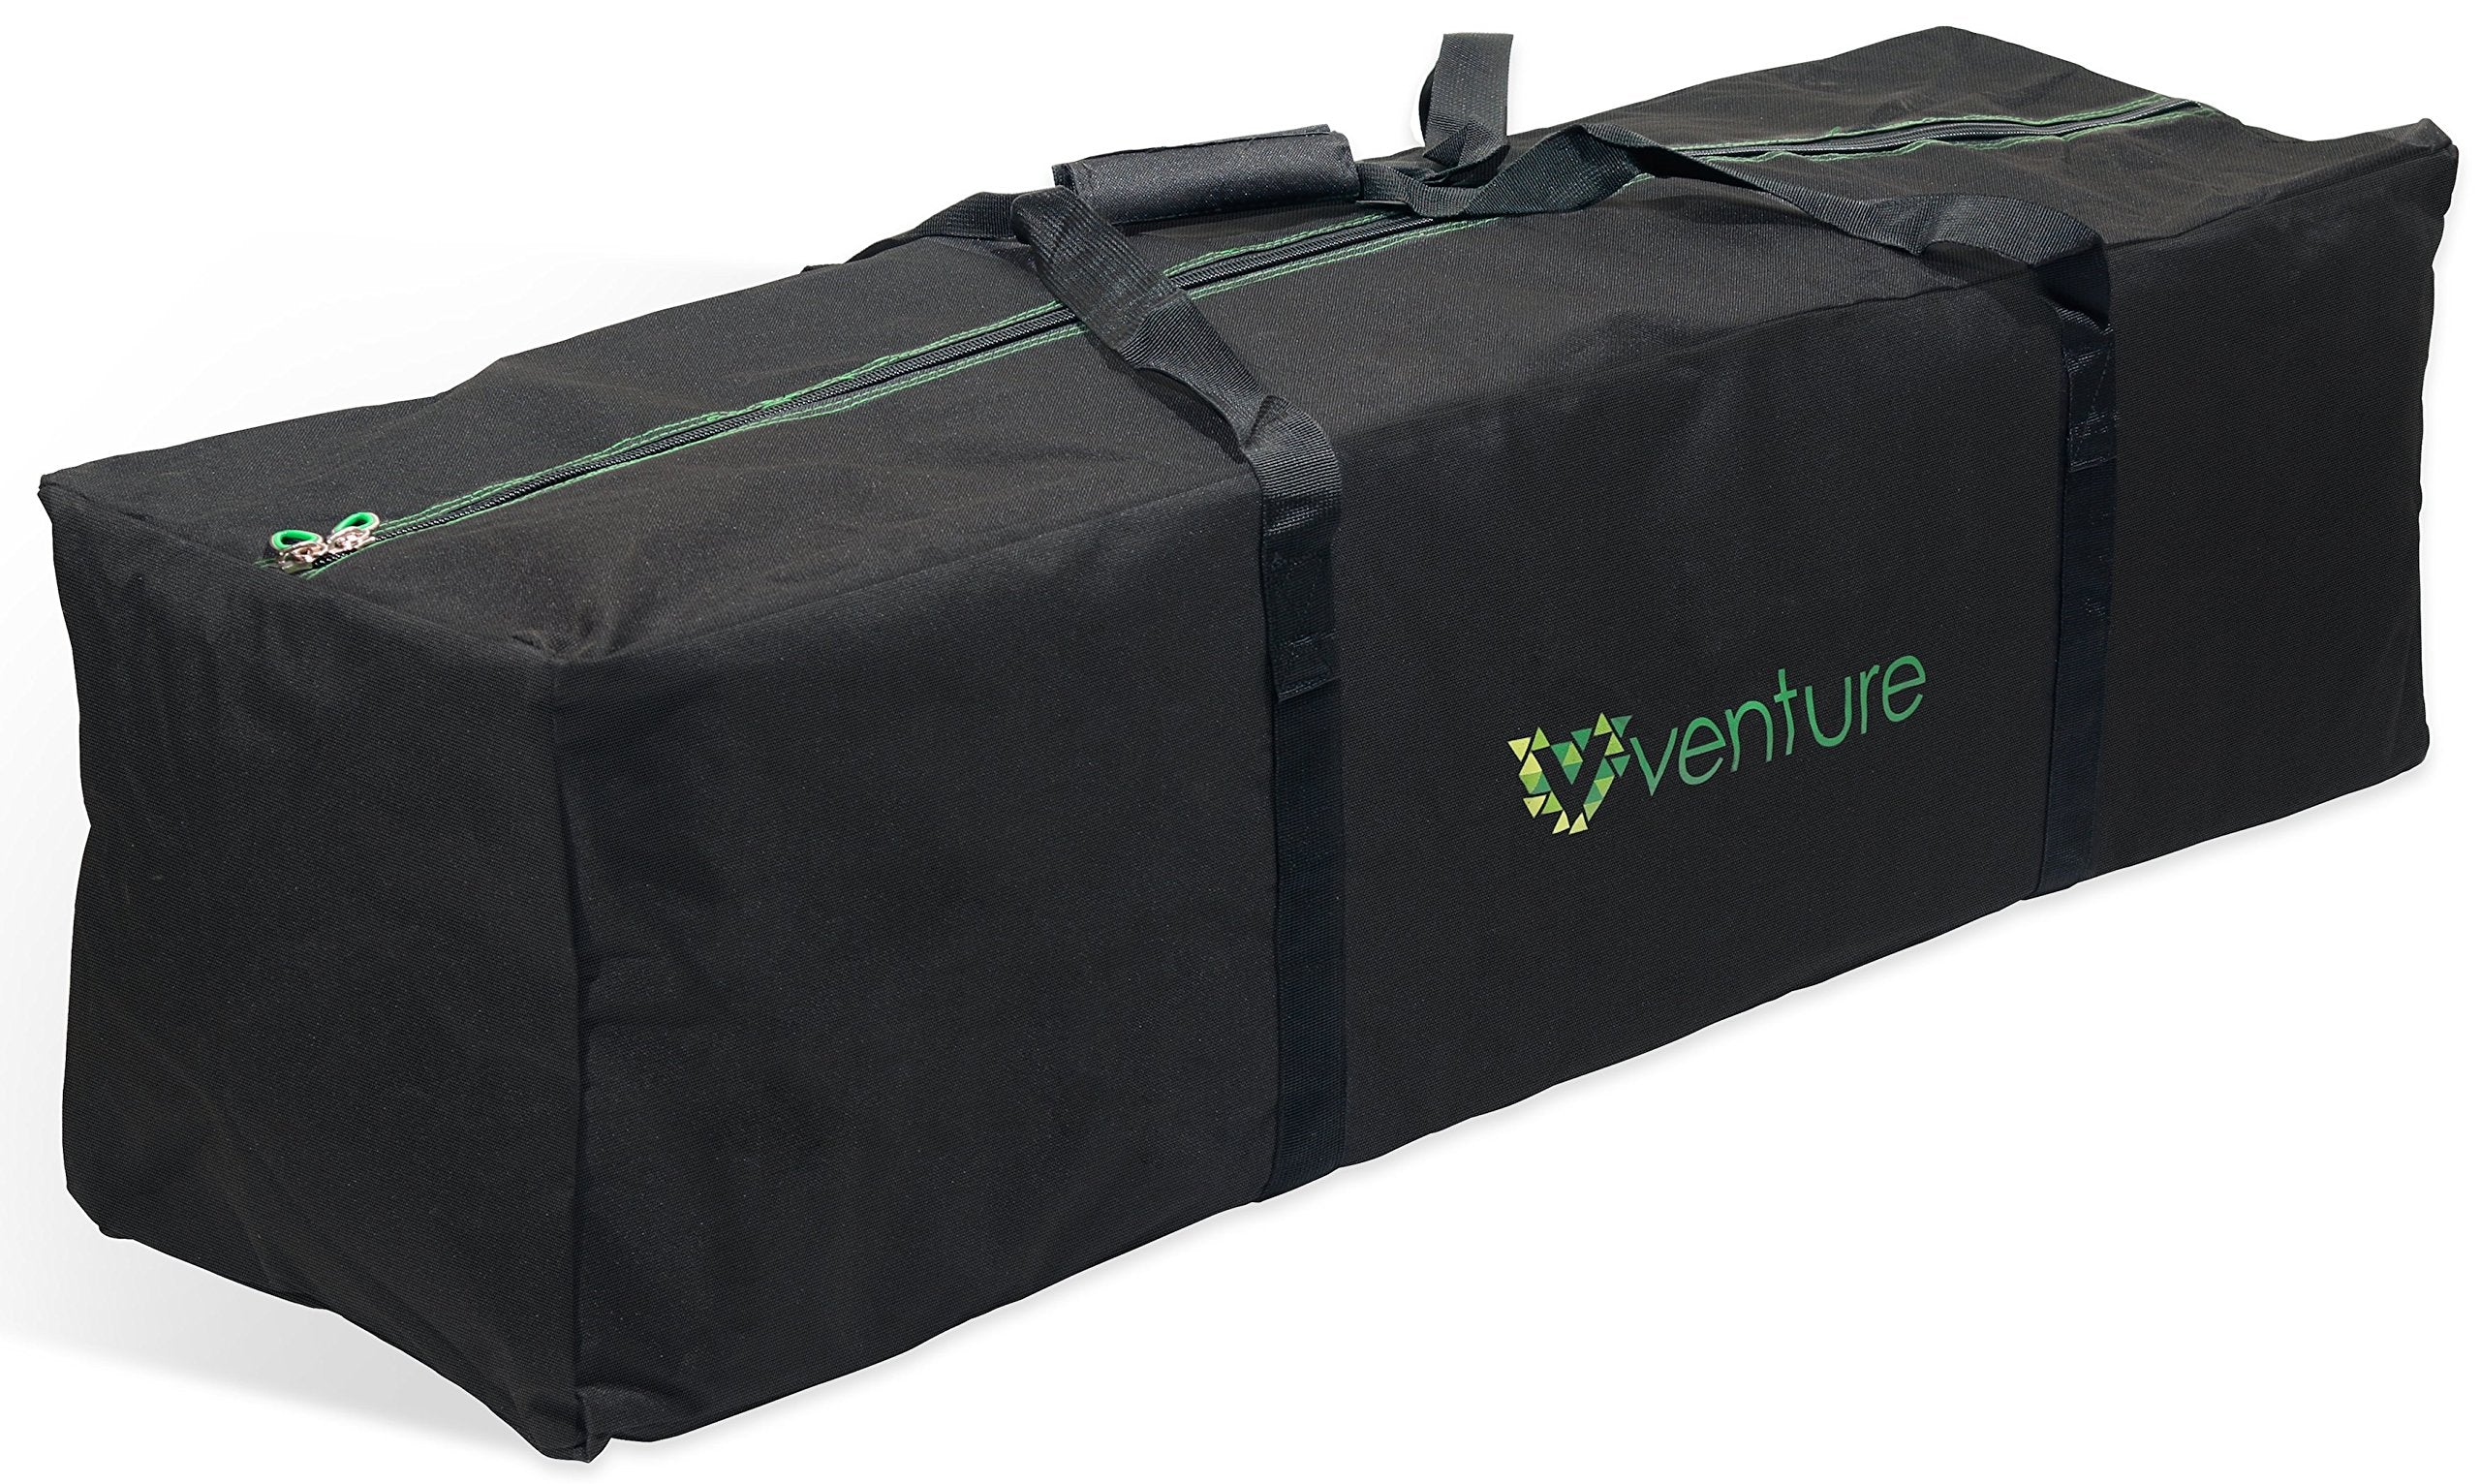 Venture Universal Buggy Stroller Transport Bag